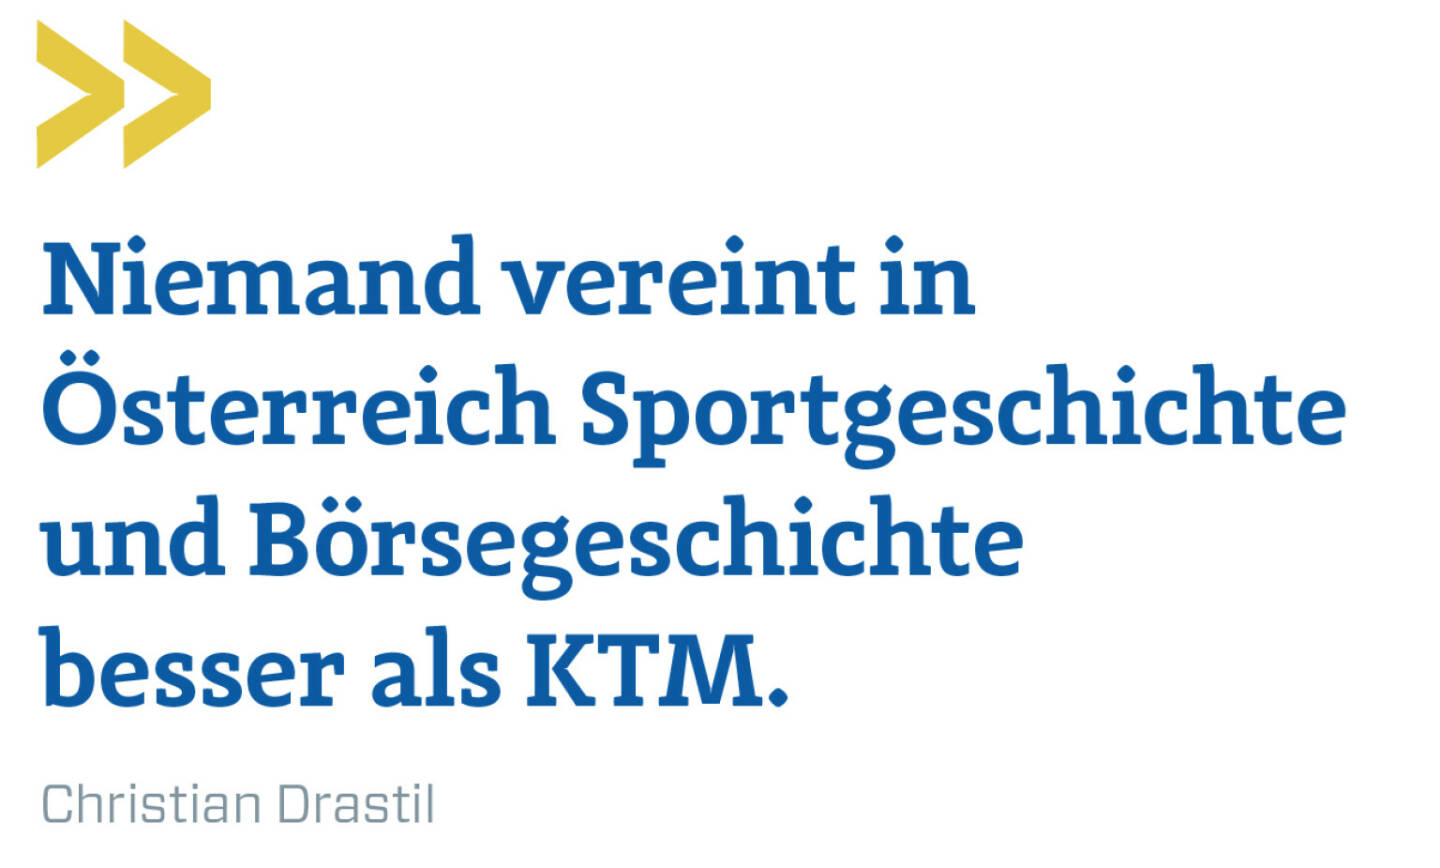 Niemand vereint in Österreich Sportgeschichte und Börsegeschichte besser als KTM.
Christian Drastil